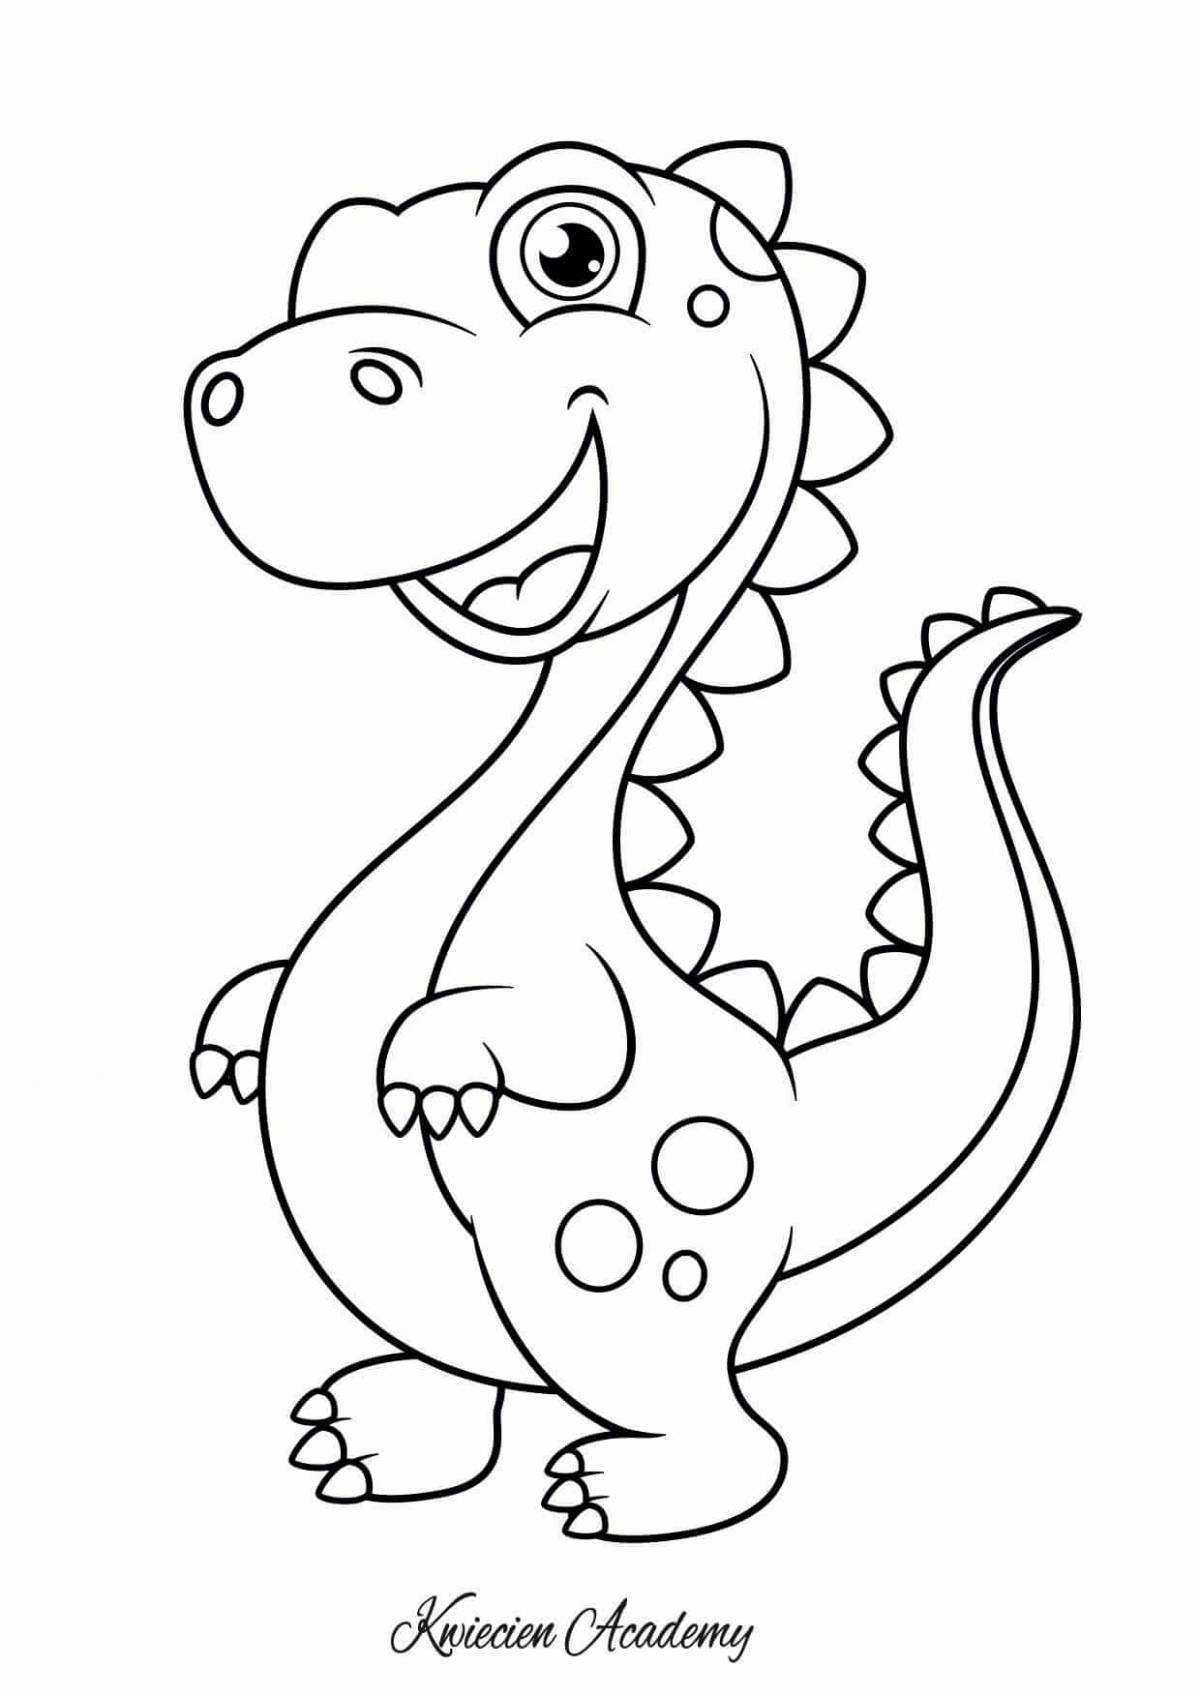 Цветная раскраска динозавров для детей 4-5 лет